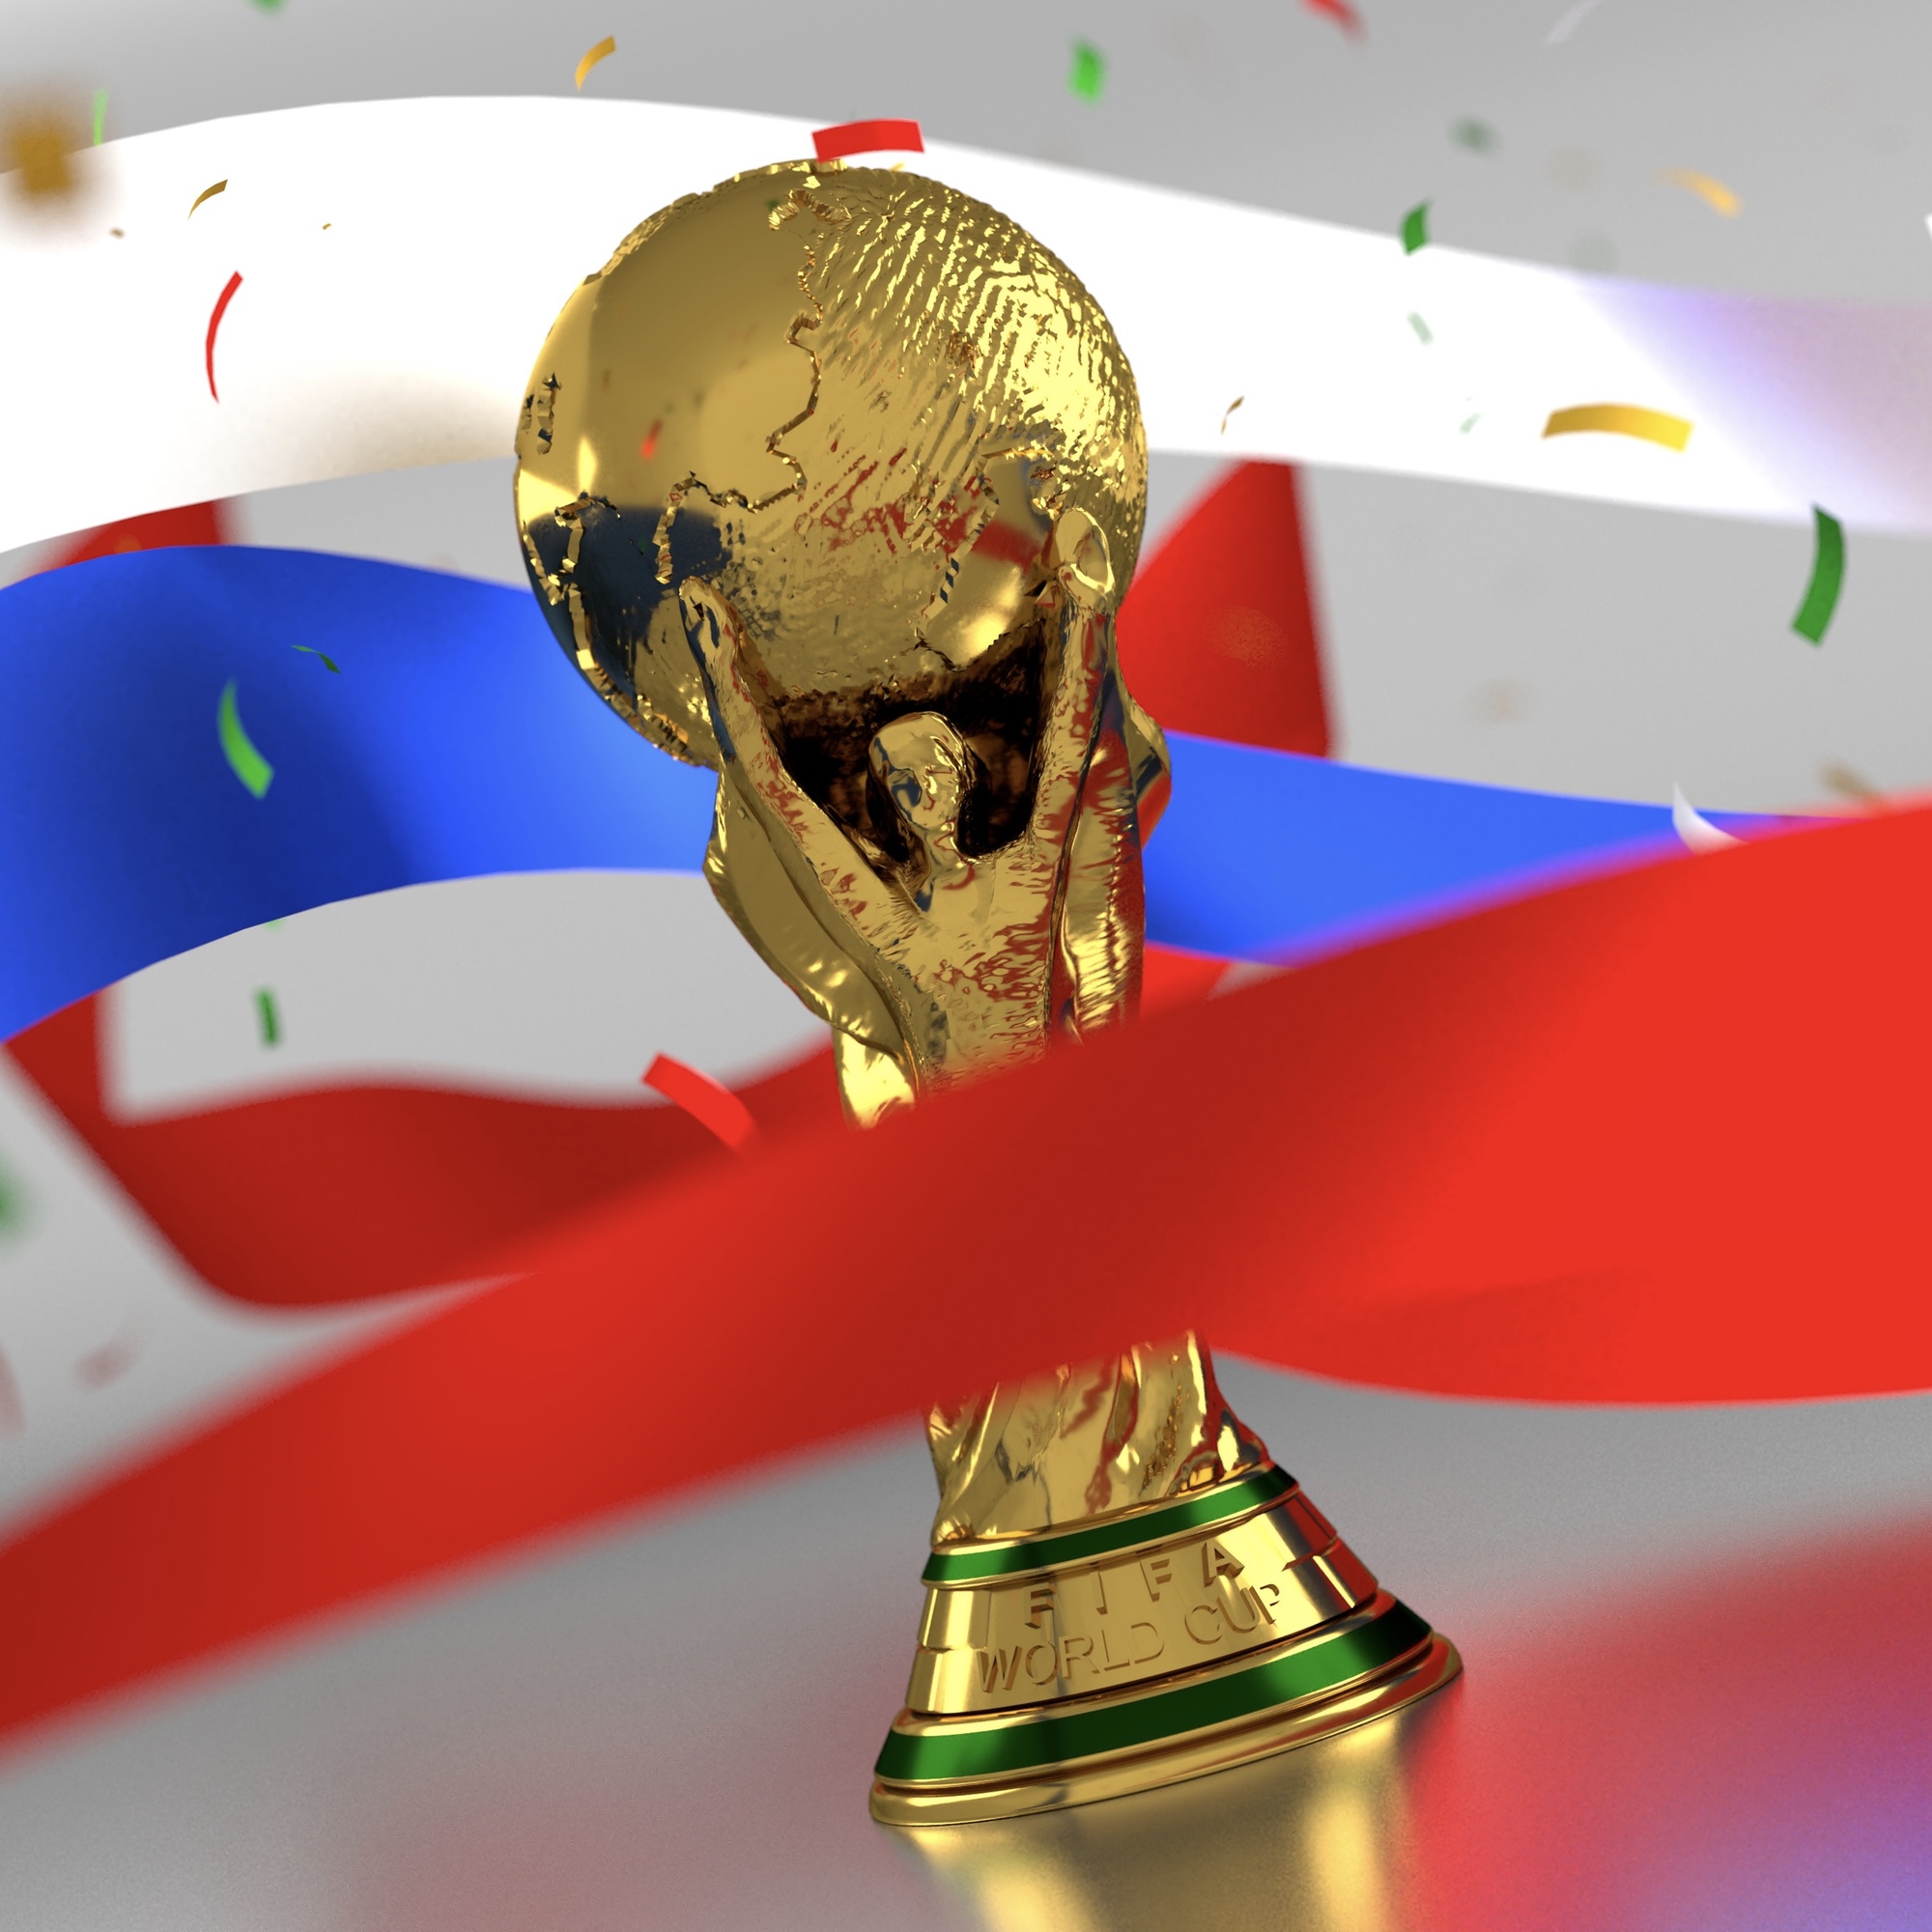 Bild: Pokal mit Ähnlichkeit zum FIFA-WM-Pokal mit farbigen Bändern in den russischen Nationalfarben weiss, blau und rot